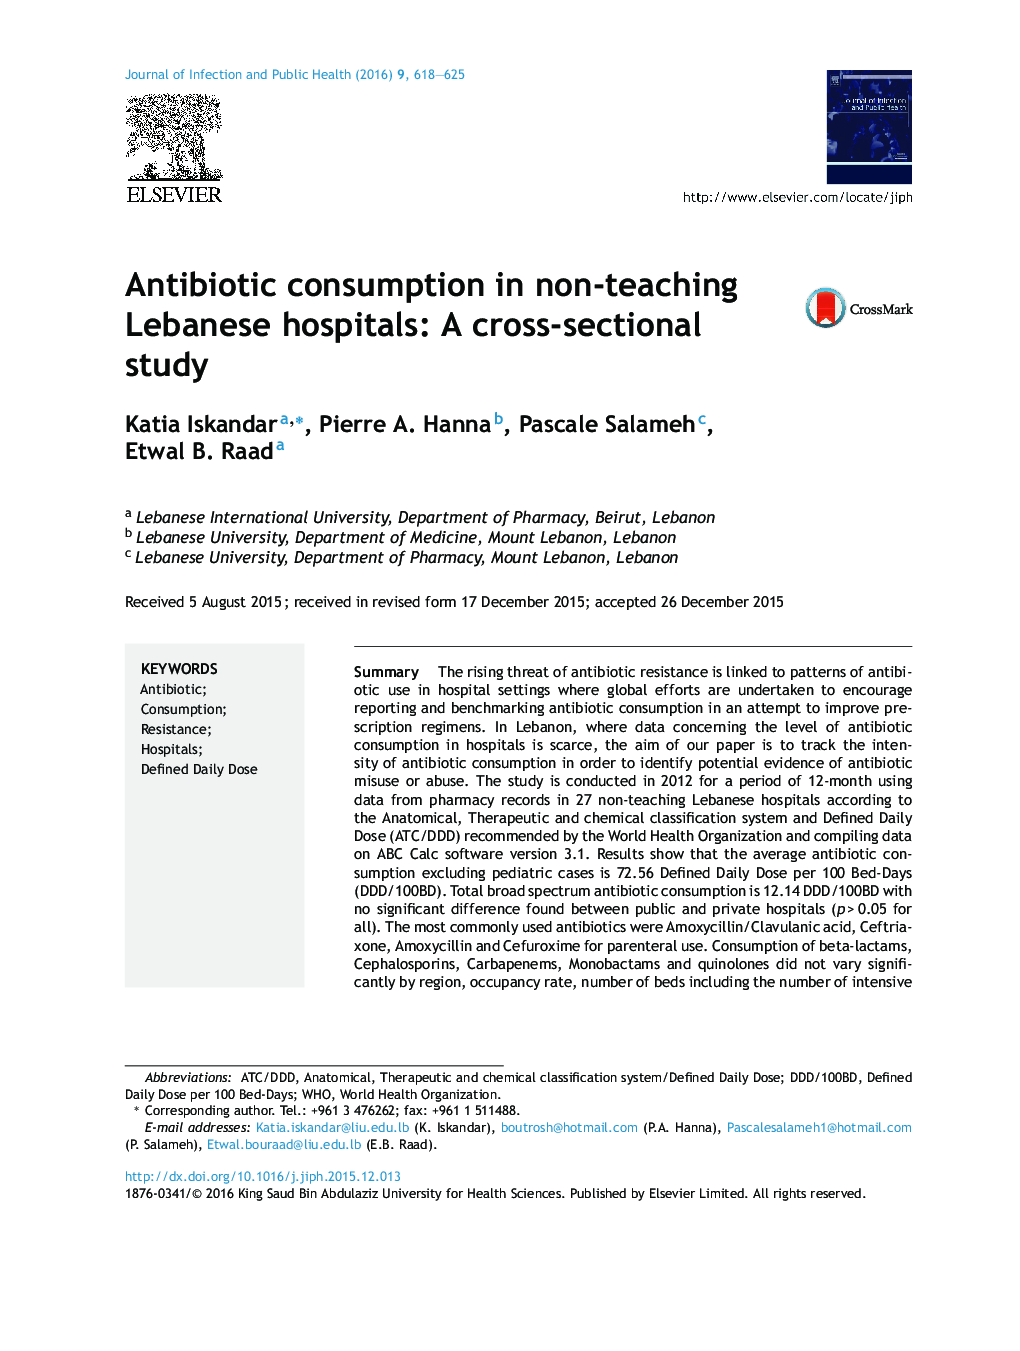 مصرف آنتی بیوتیک در بیمارستان های غیرآموزشی لبنان: یک مطالعه مقطعی